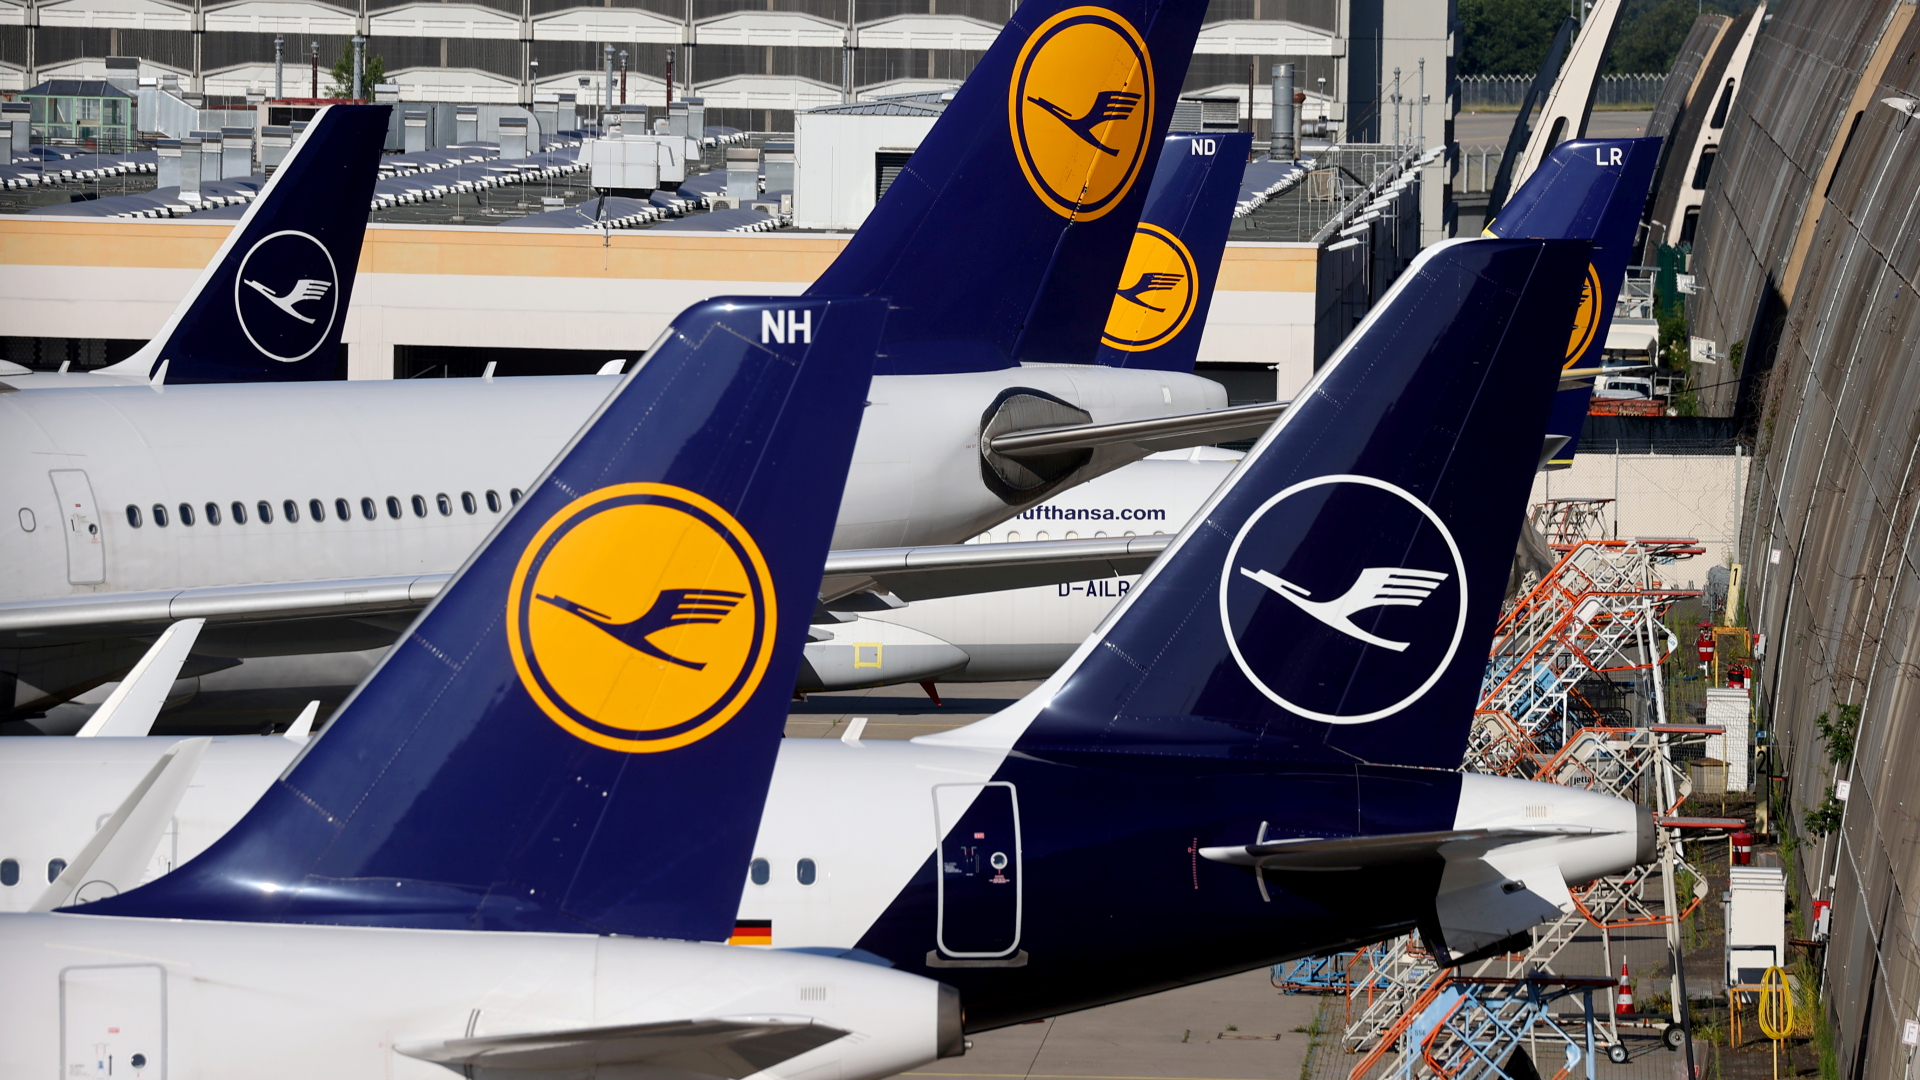 Logo der Lufthansa am Leitwerk mehrerer parkender Flugzeuge | REUTERS